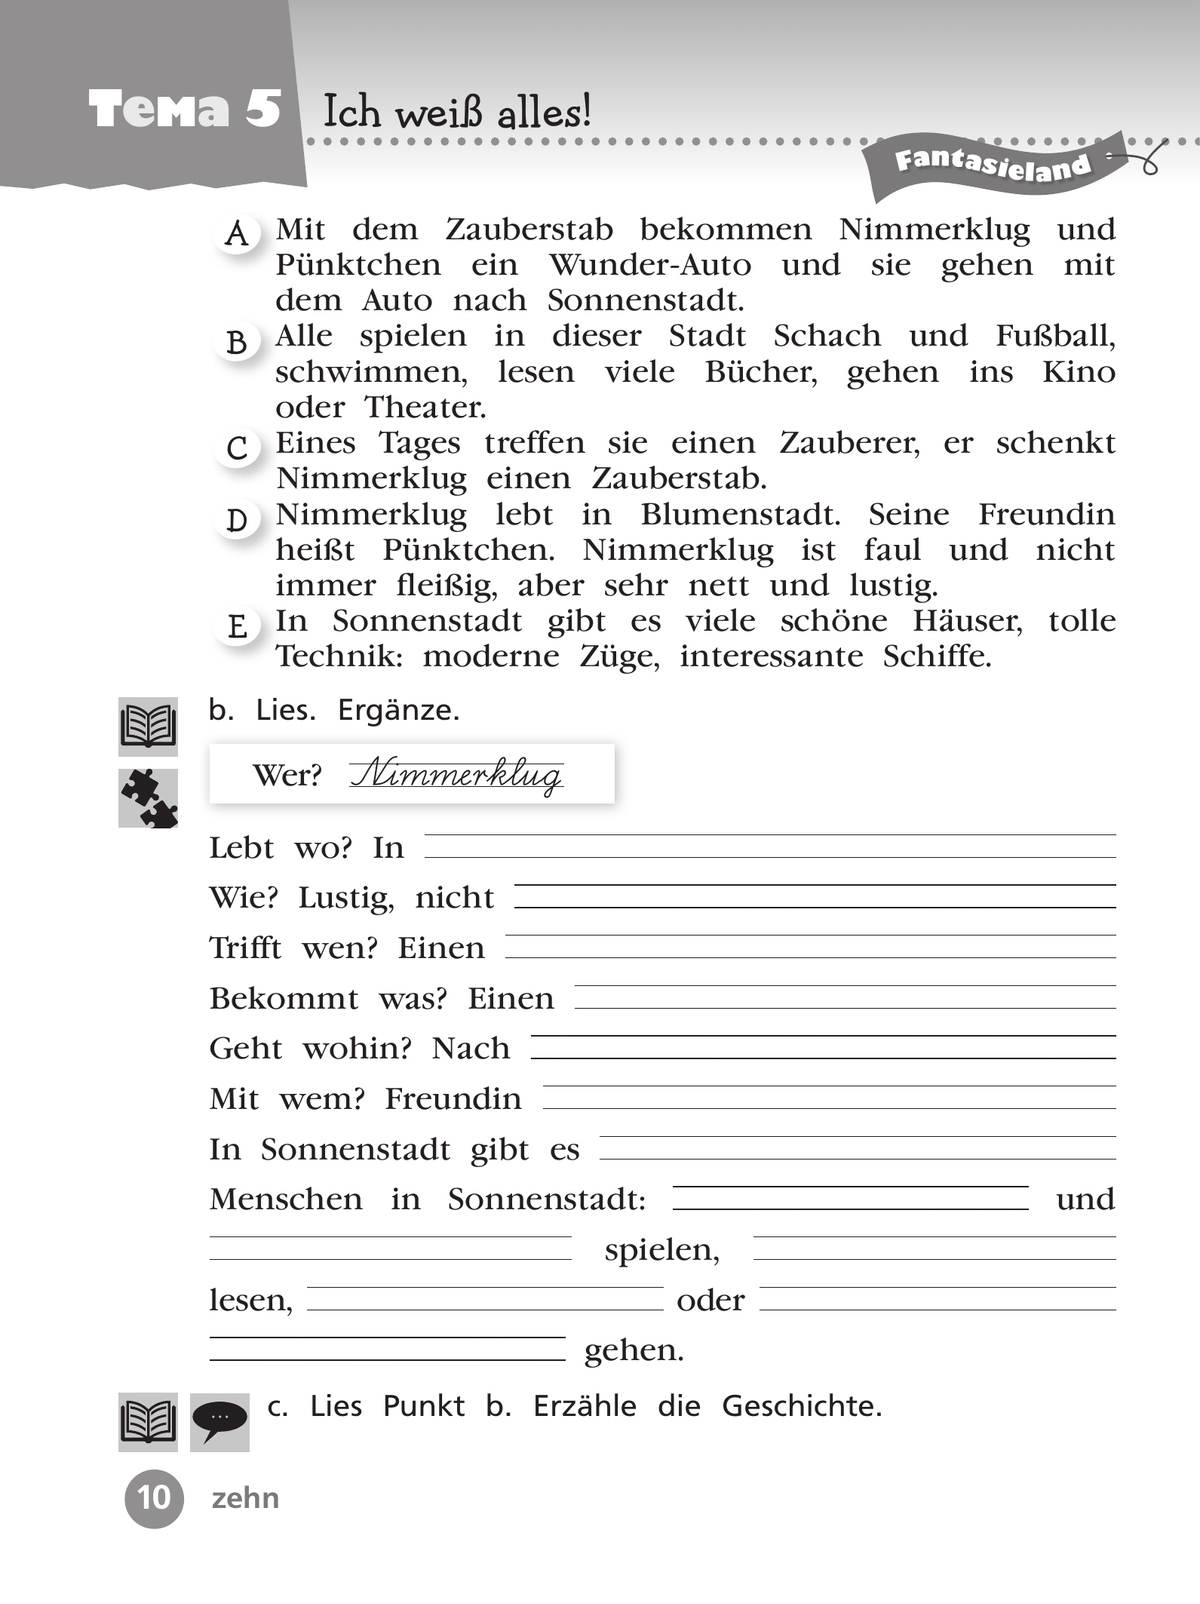 Немецкий язык. Рабочая тетрадь. 4 класс. В 2 ч. Часть 2 11